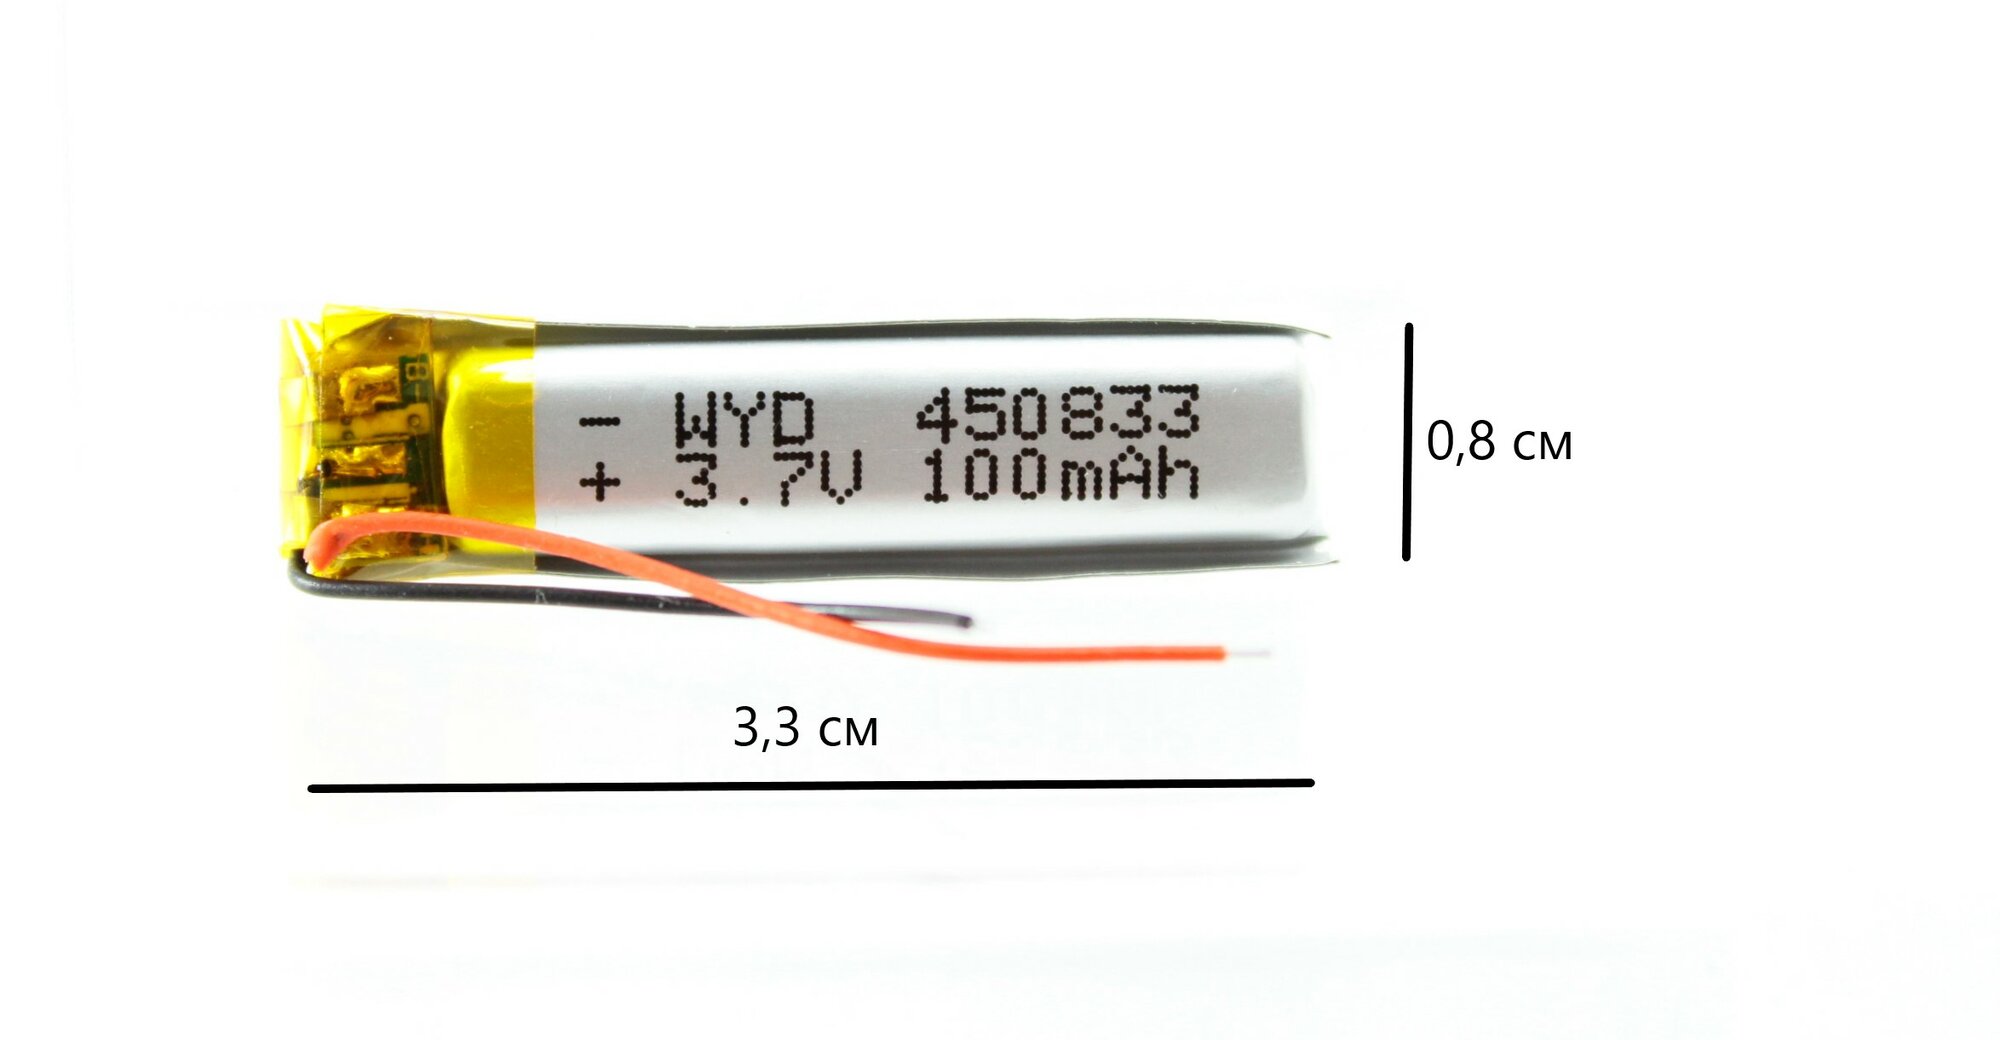 Аккумулятор универсальный 450833 (45*8*33 мм) 100 mAh